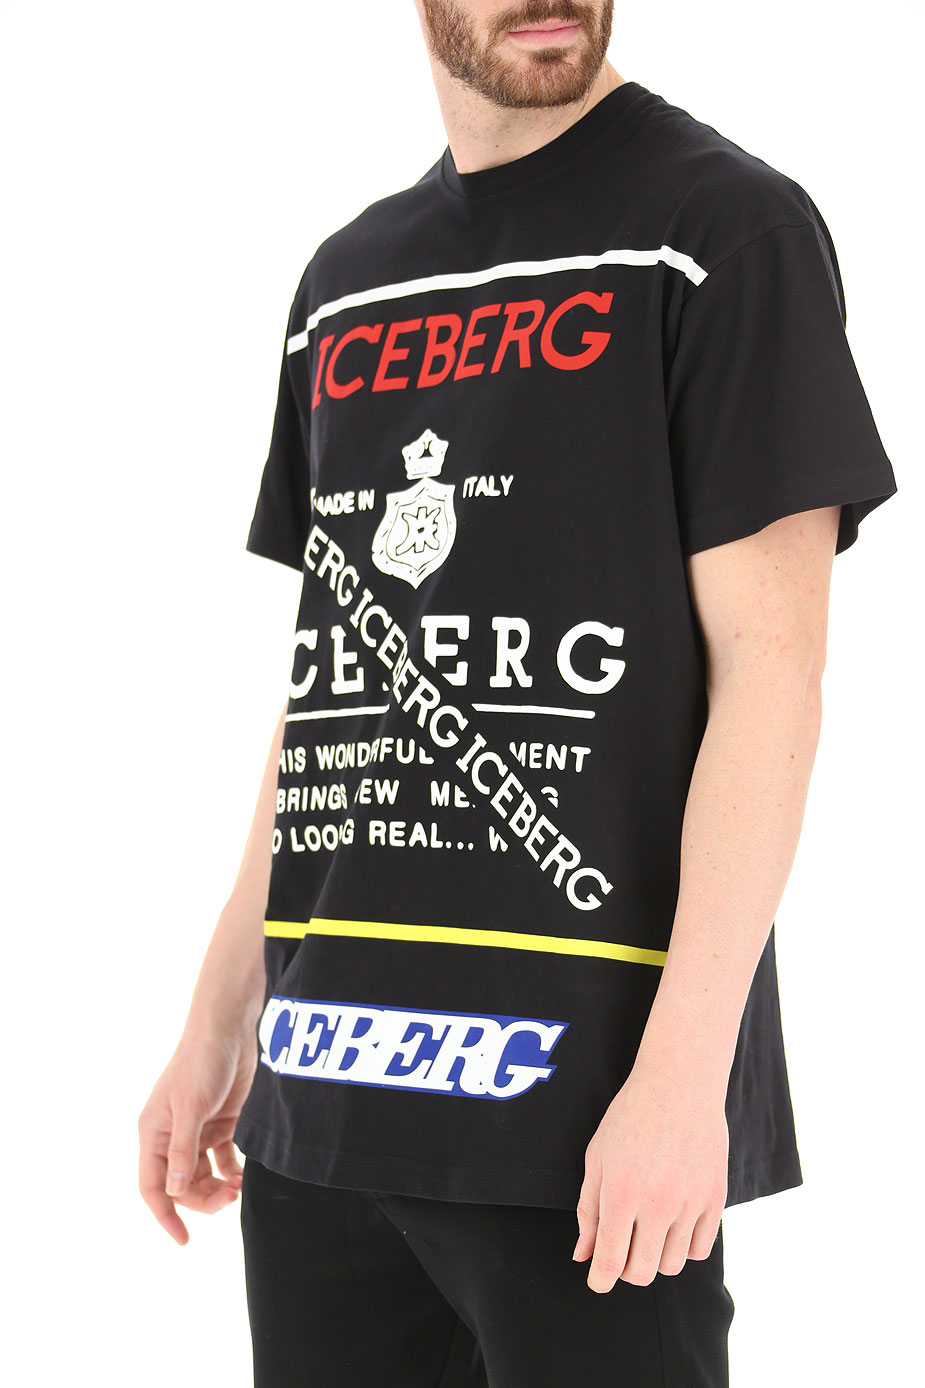 iceberg clothing wholesale